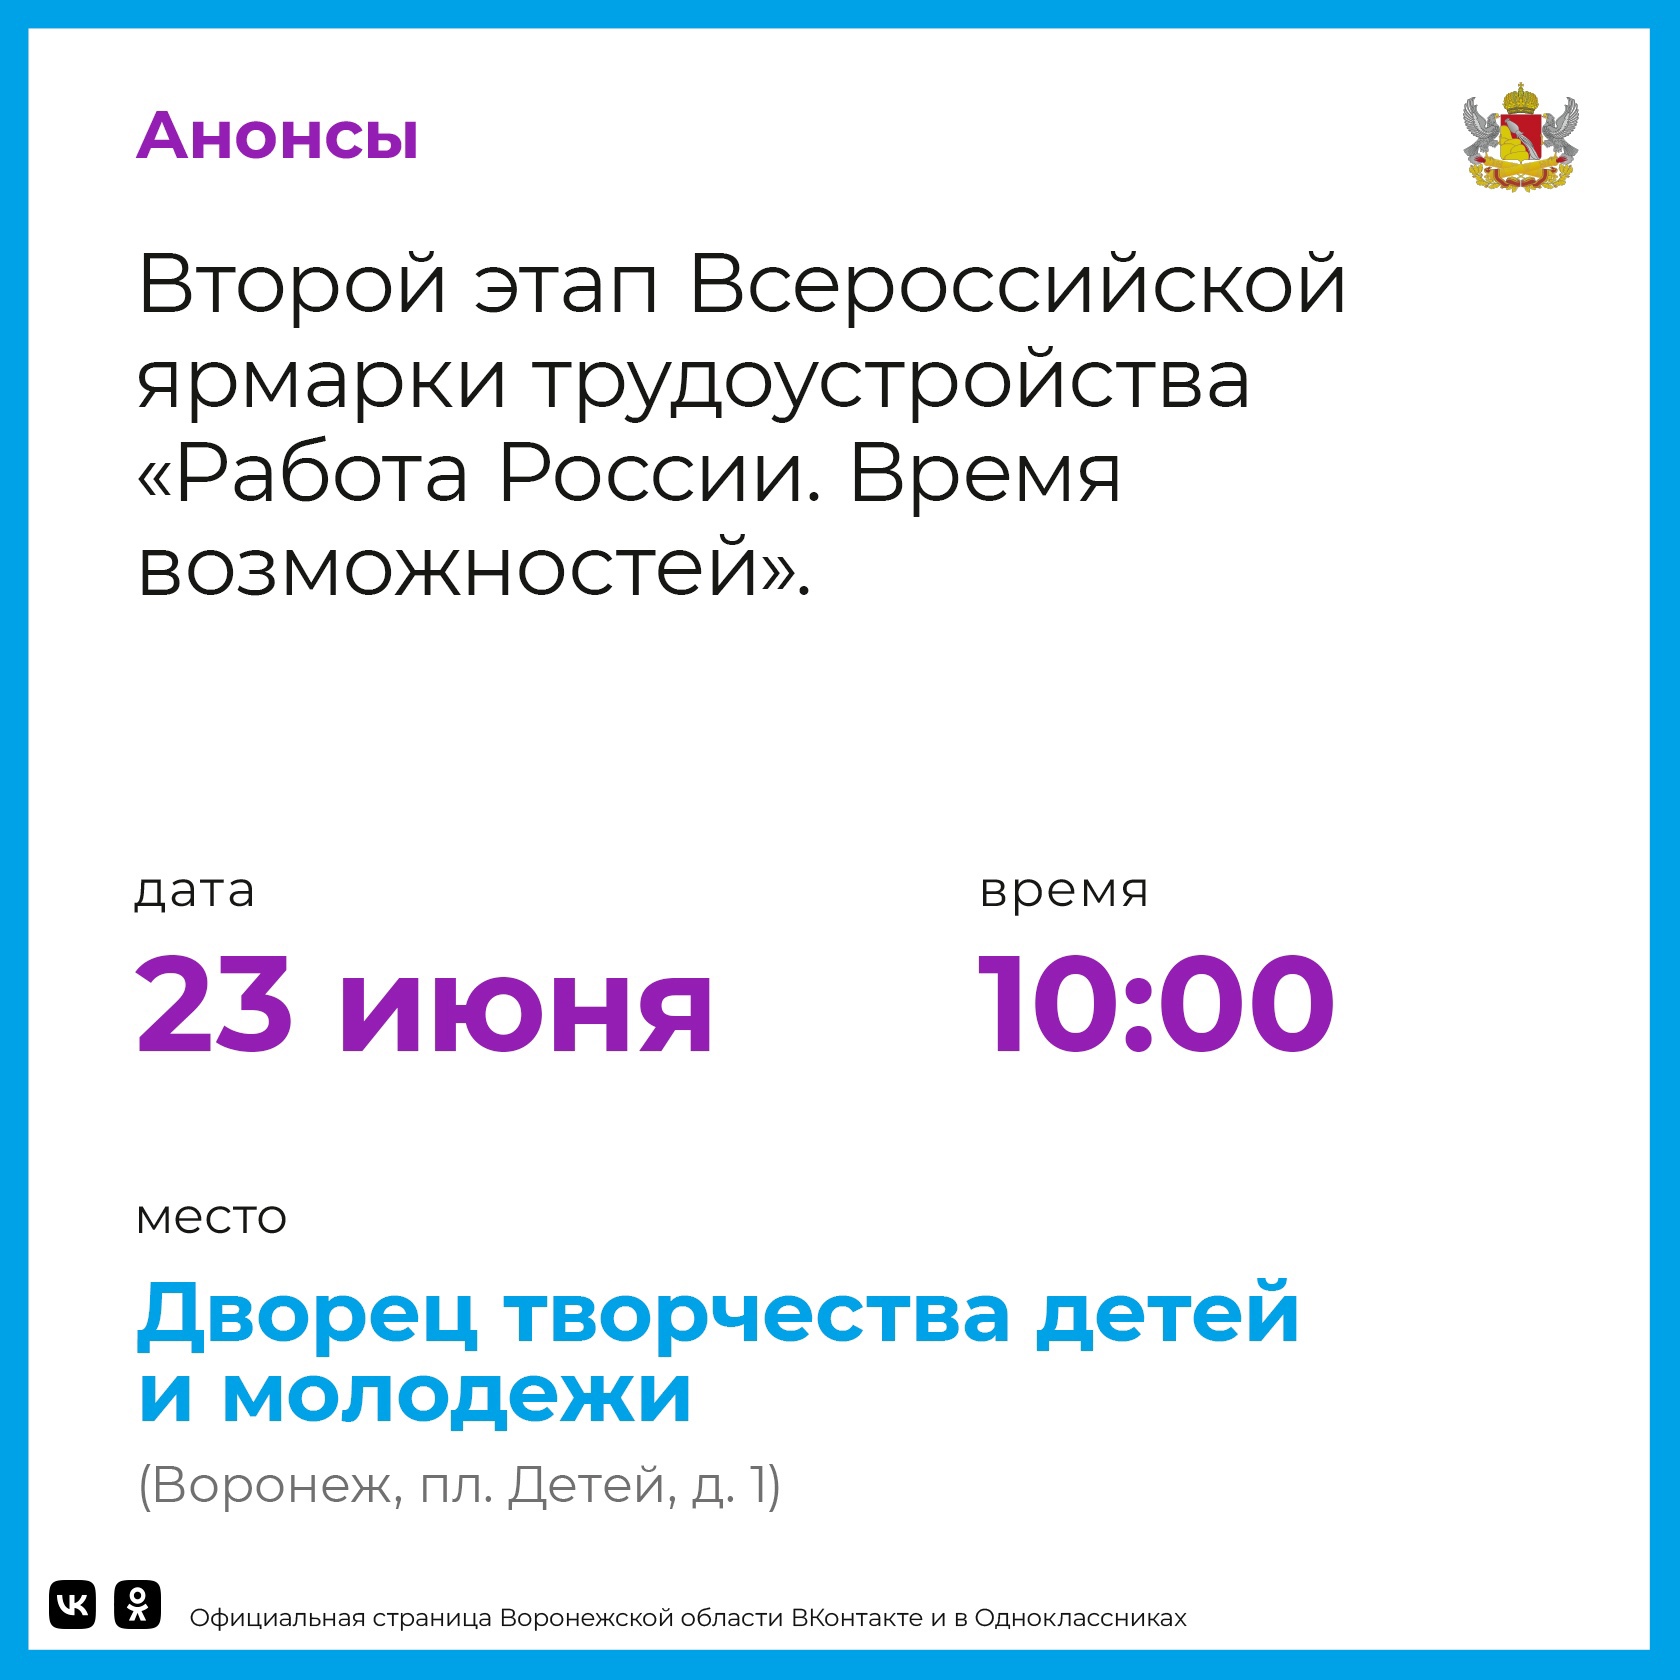 23 июня в Воронежской области пройдет второй этап ярмарки трудоустройства «Работа России. Время возможностей».